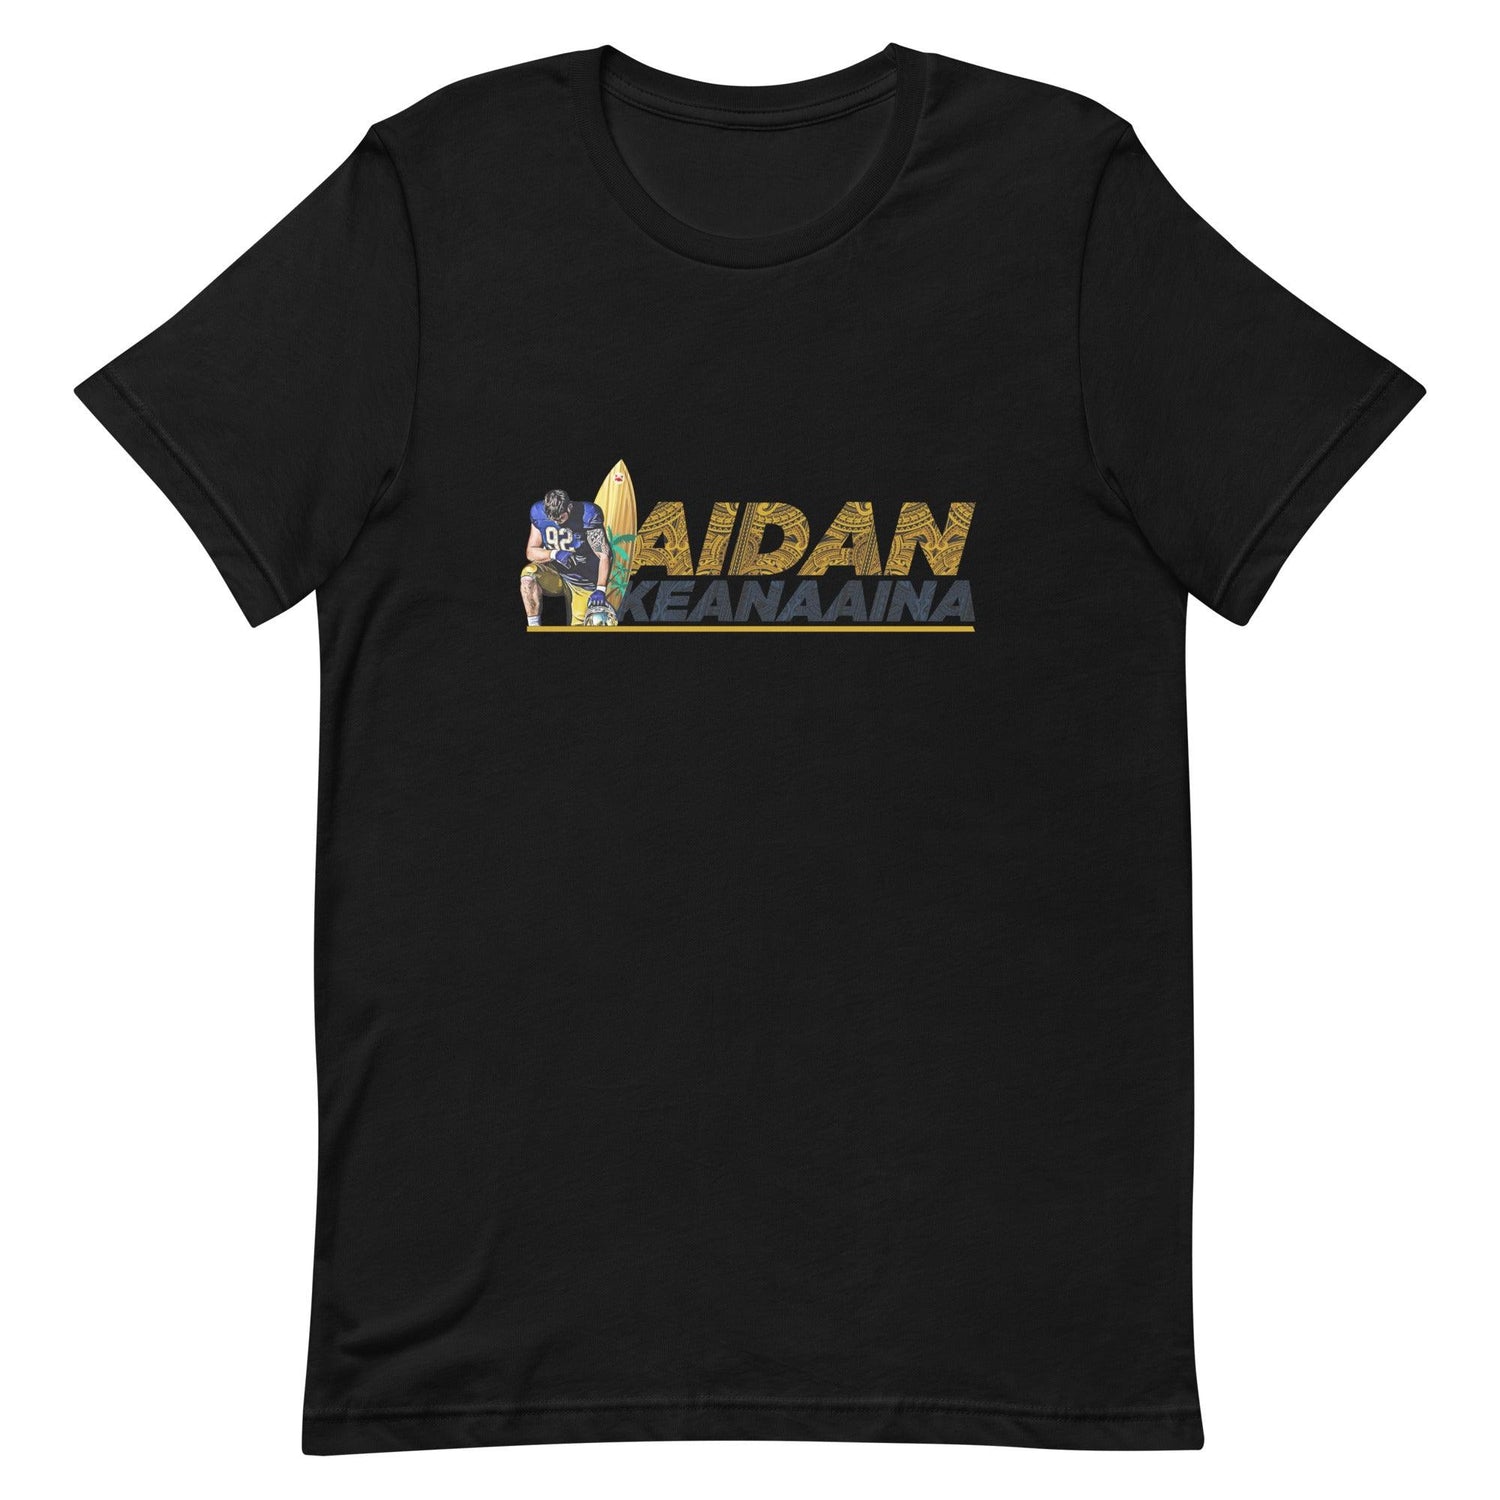 Aidan Keanaaina "Elite" t-shirt - Fan Arch